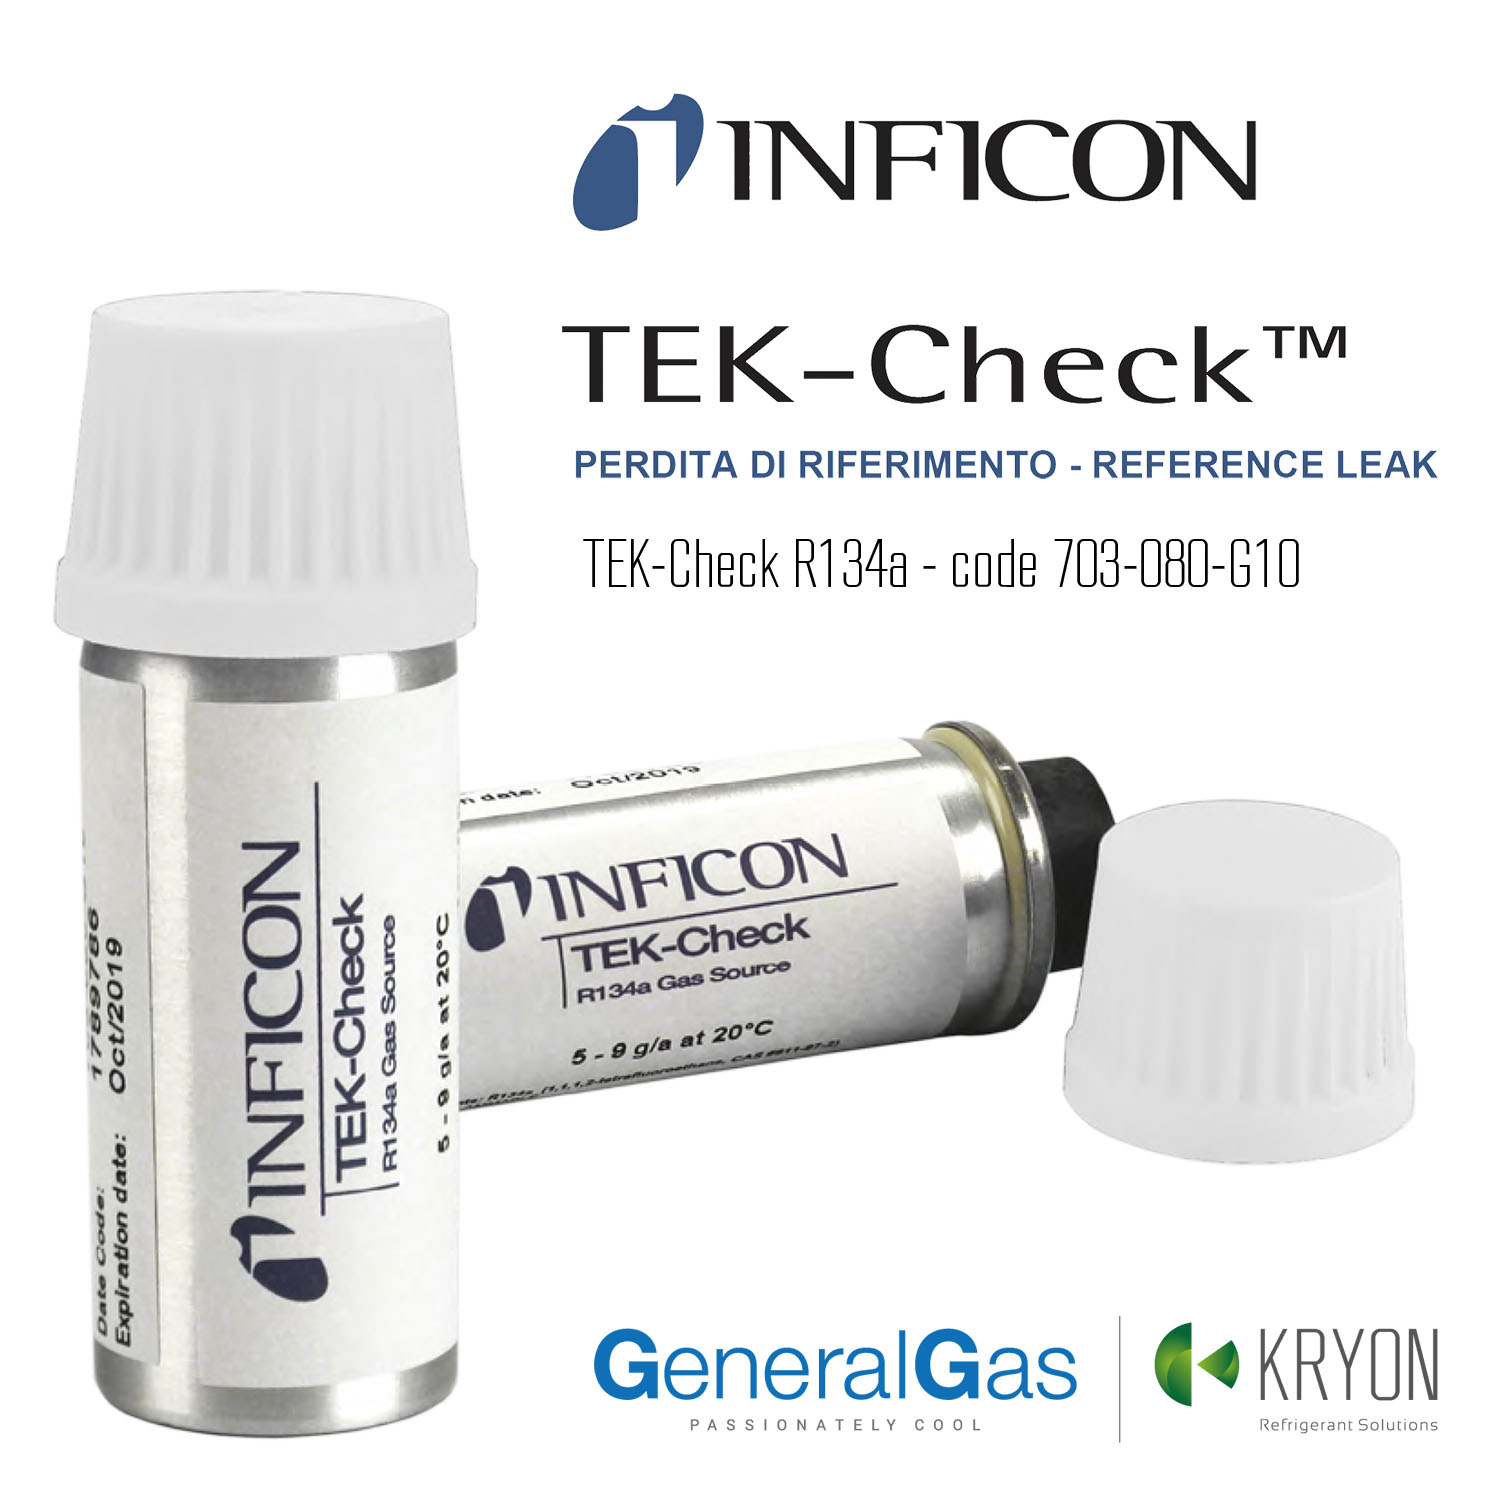 Inficon TEK-Check - perdita di riferimento per controllo cercafughe/rilevatori di perdite gas refrigeranti - tasso di perdita 5 grammi/anno HFC 134a - Foto 1 